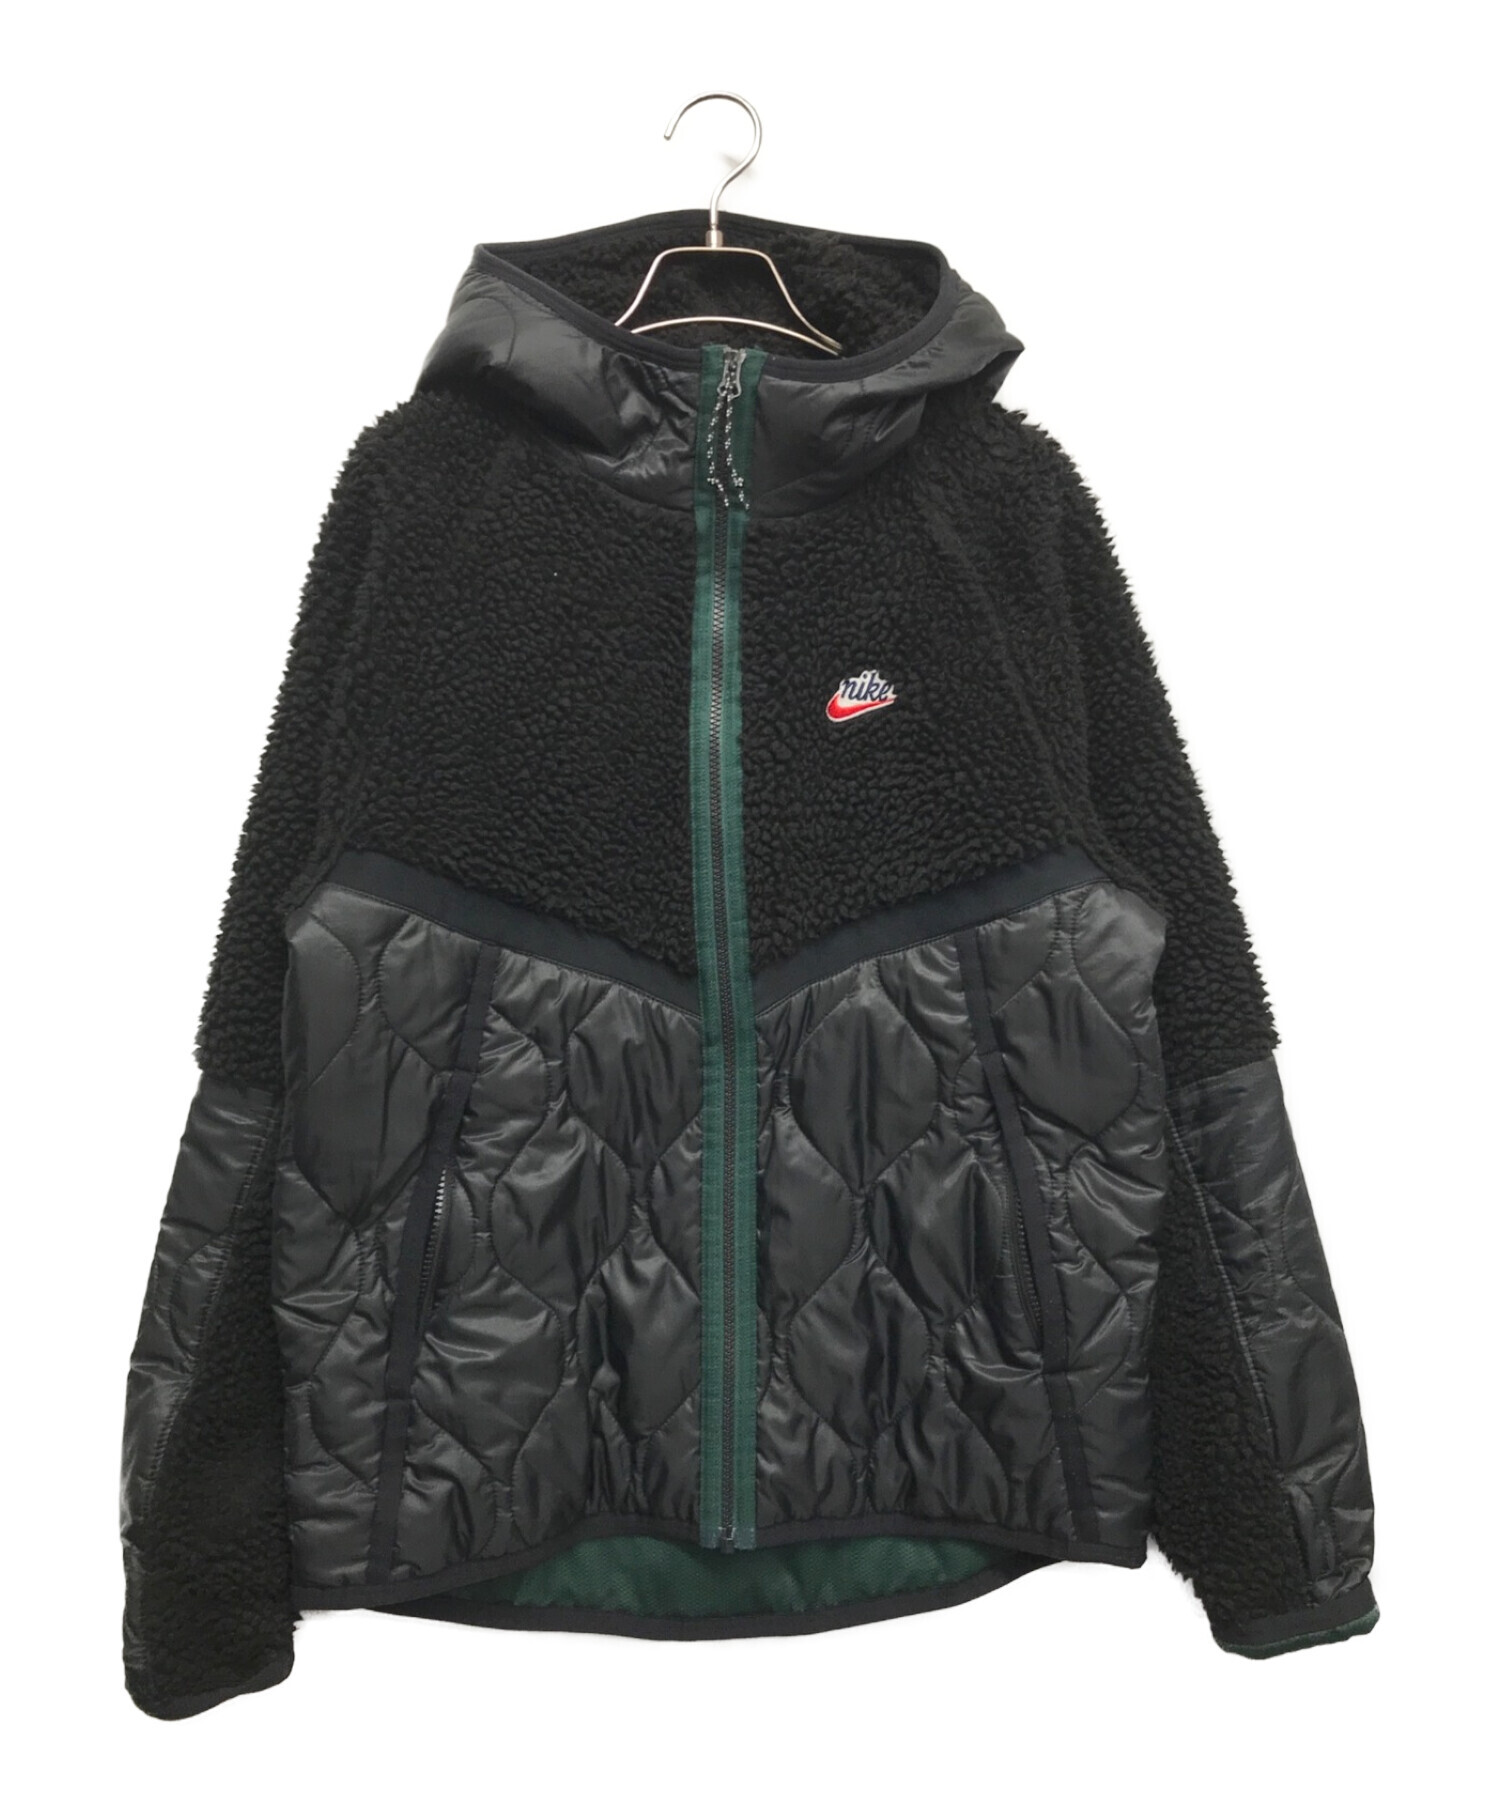 NIKE (ナイキ) ボアフリース キルティングジャケット ブラック サイズ:M